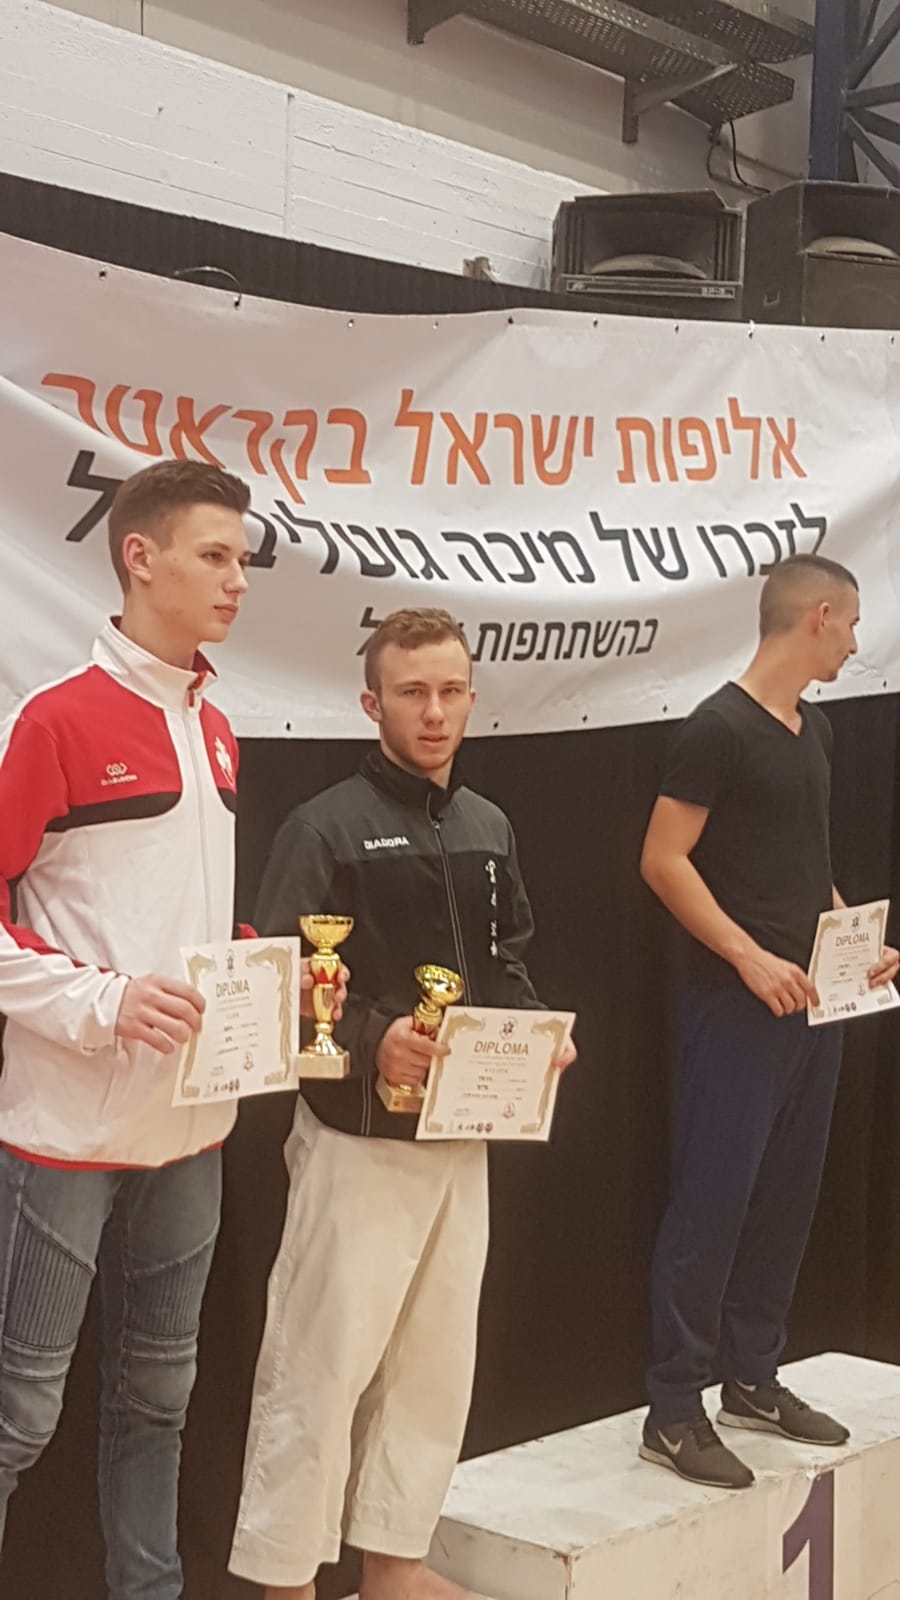 בתמונה: גיא שרר זוכה שני גביעים באליפות ישראל